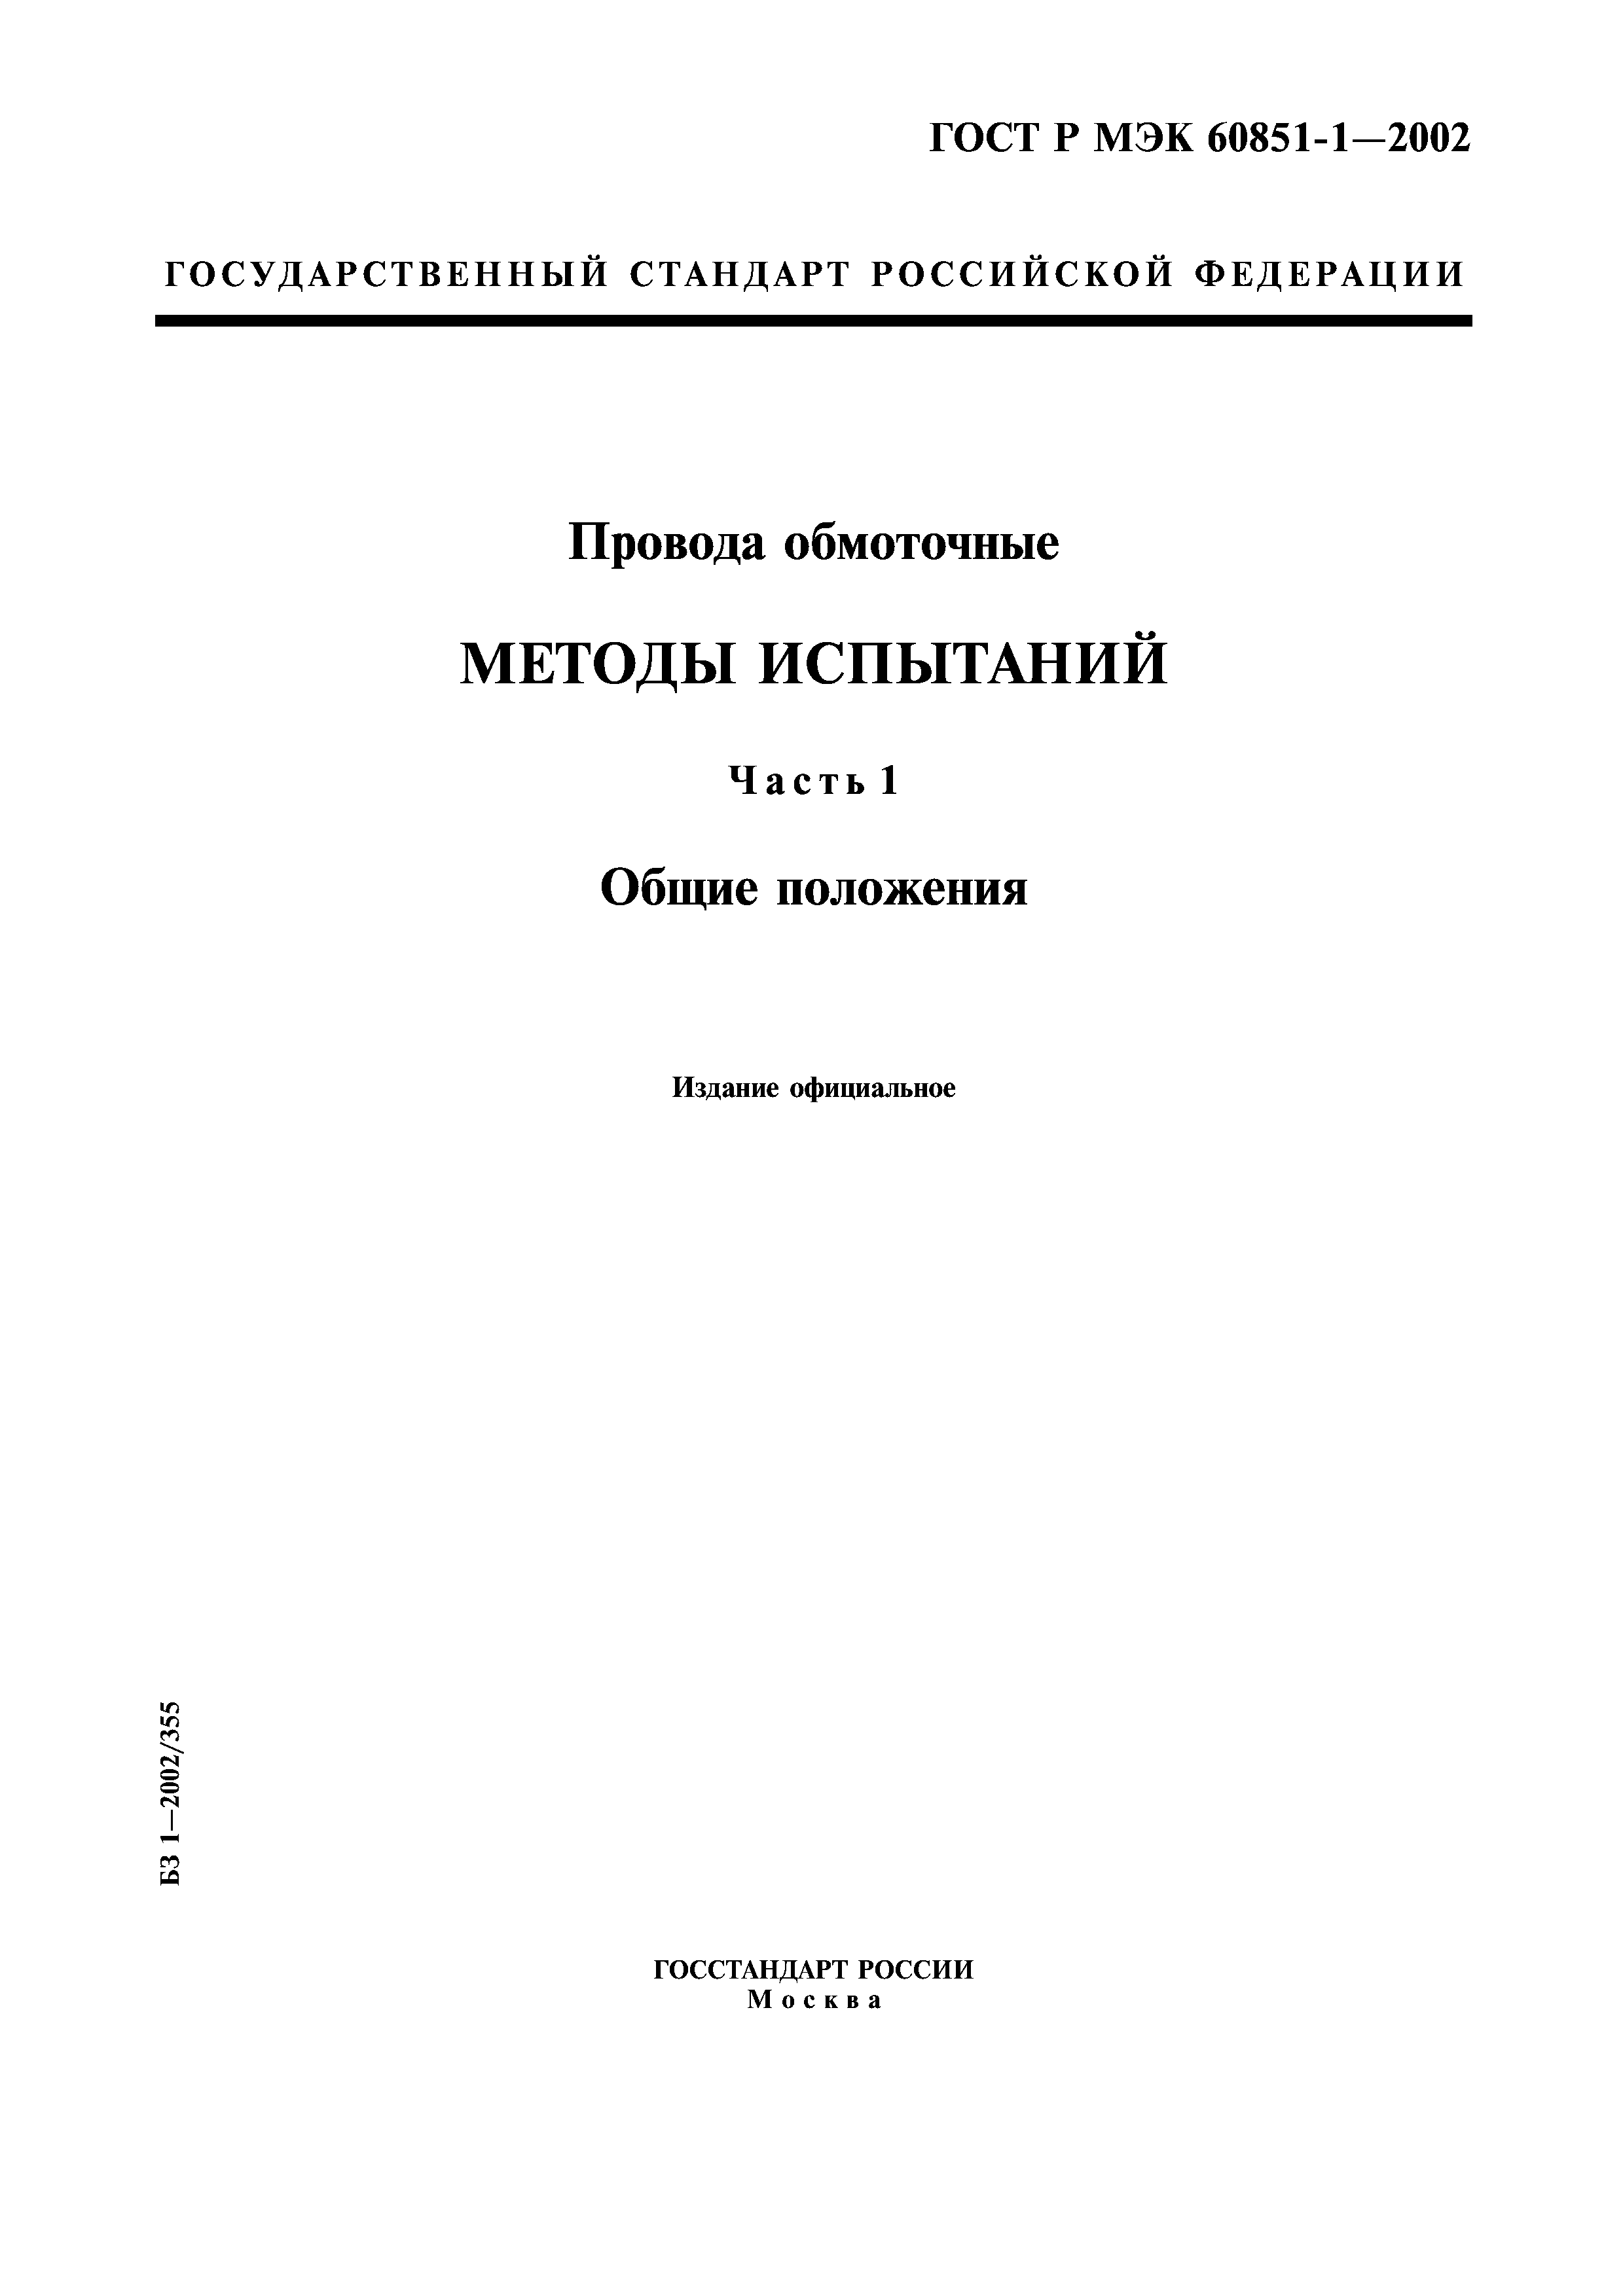 ГОСТ Р МЭК 60851-1-2002